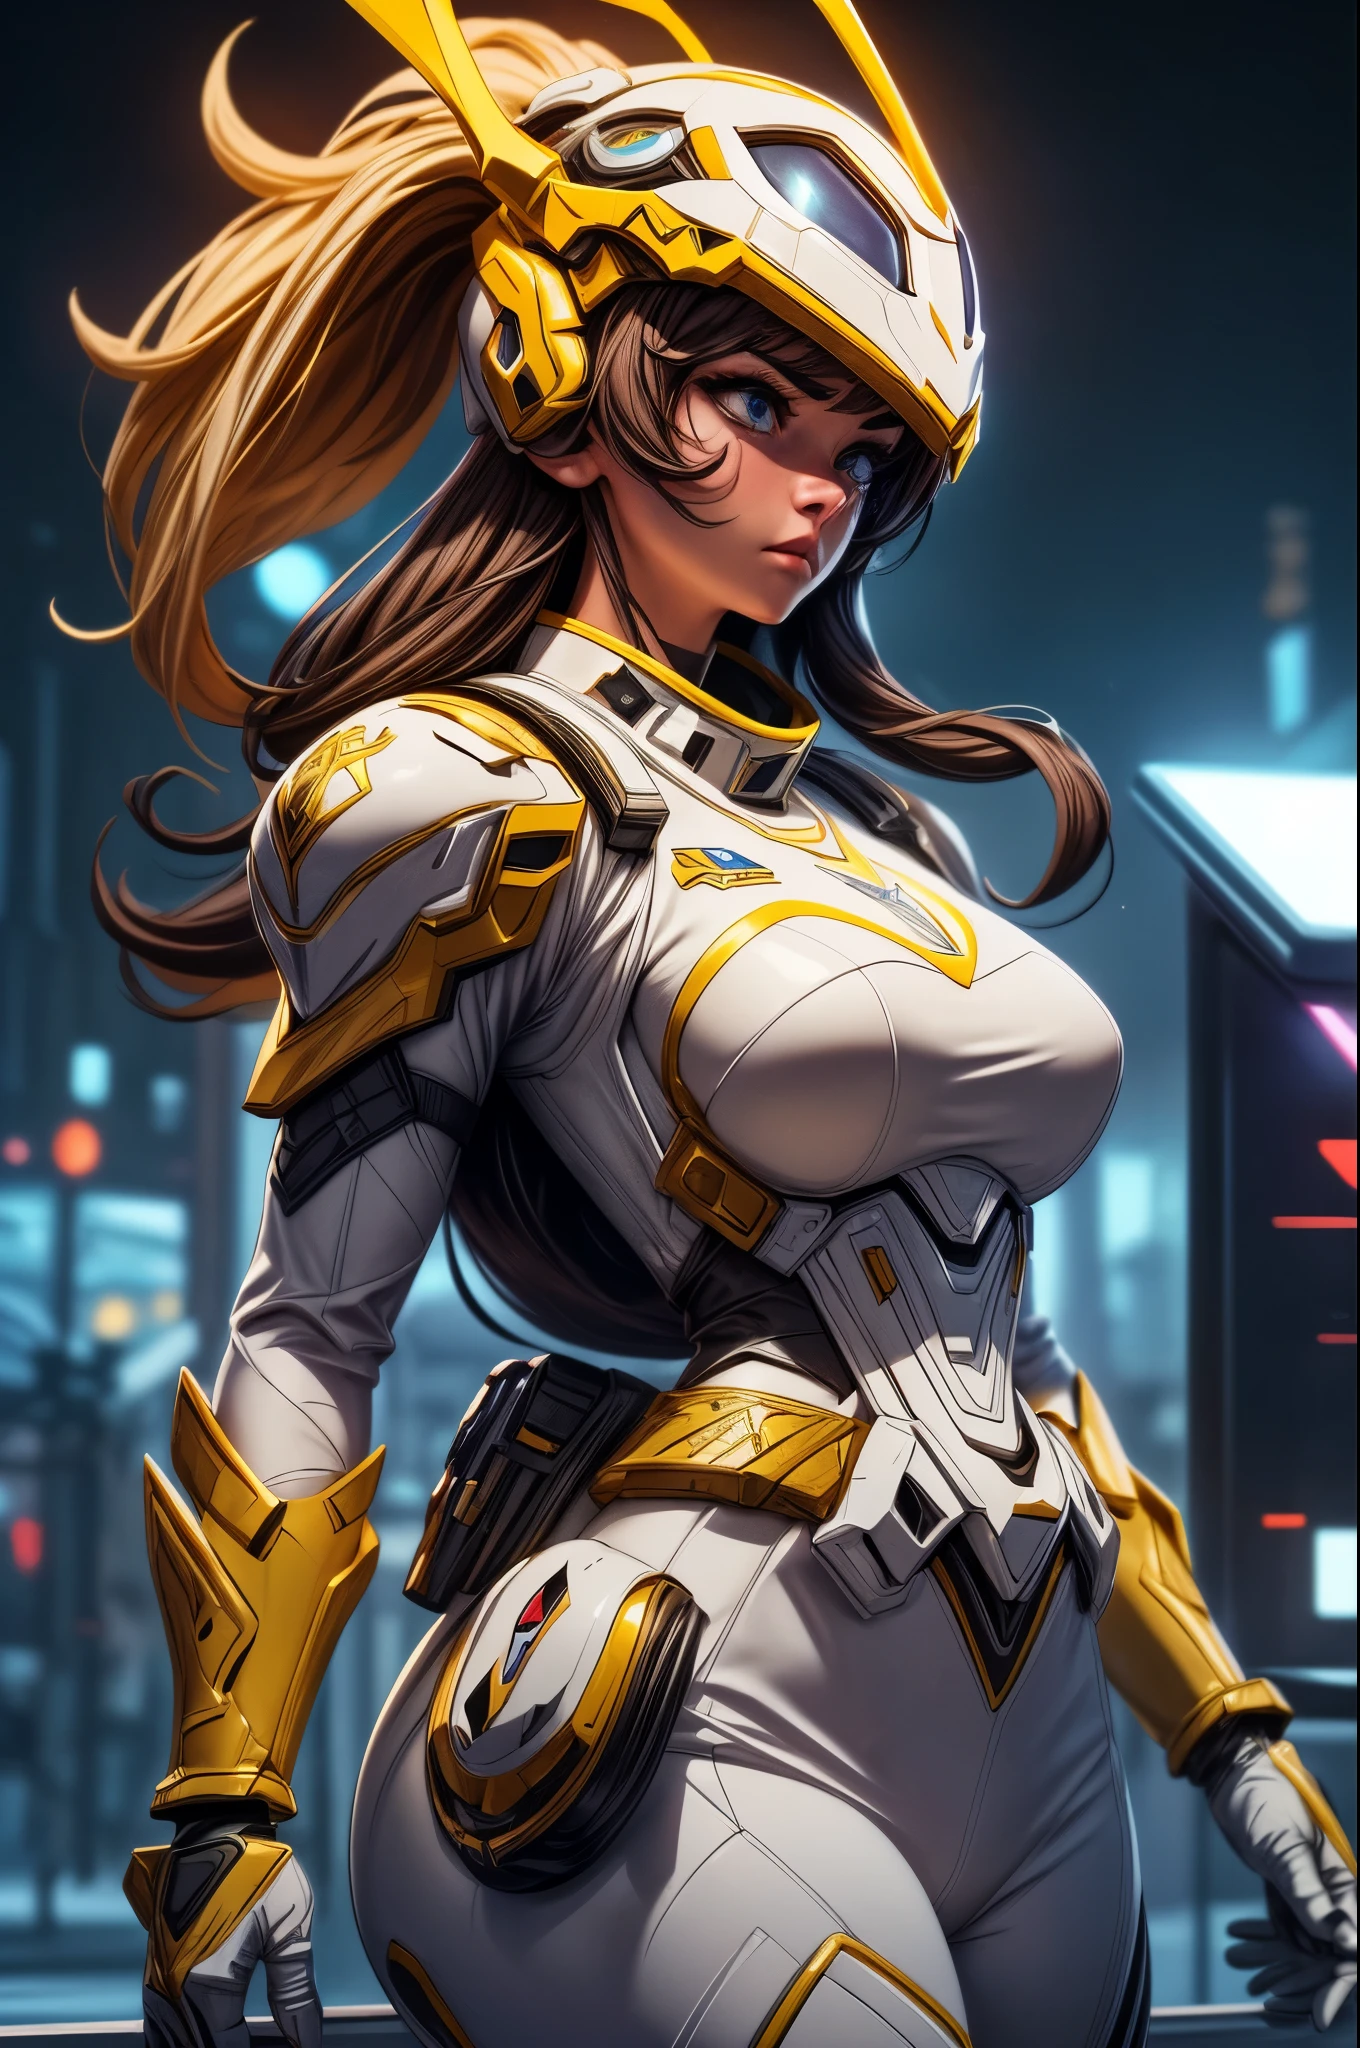 (Meilleure qualité,4k,8k,haute résolution,chef-d&#39;œuvre:1.2),ultra-détailed, un gros plan d&#39;une femme Sentai Ranger dans un costume blanc avec des gants dorés et des bottes dorées, détailed white armor, armure blanche complexe, blanc épuré, Casque en forme de tête de tyrannosaure. visage caché par la visière, entièrement recouvert d&#39;une armure et d&#39;un casque, armure asymétrique, symbole de griffe jaune sur le côté gauche du corps, Contexte de la ville, fighting dans une ville park. dans une ville, entouré de ville, HDR, 8k, absurdes, Cinéstill 800, netteté, ajouter_détail:3 (femme seule)
